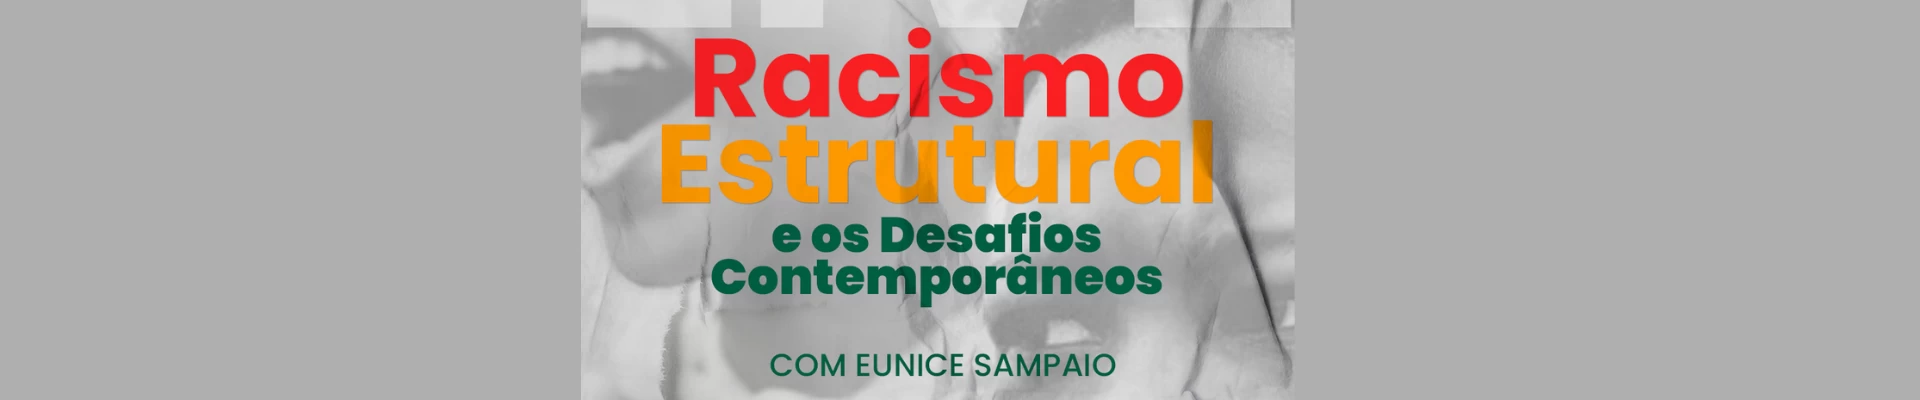 Palestra sobre Racismo Estrutural e os Desafios Contemporâneos